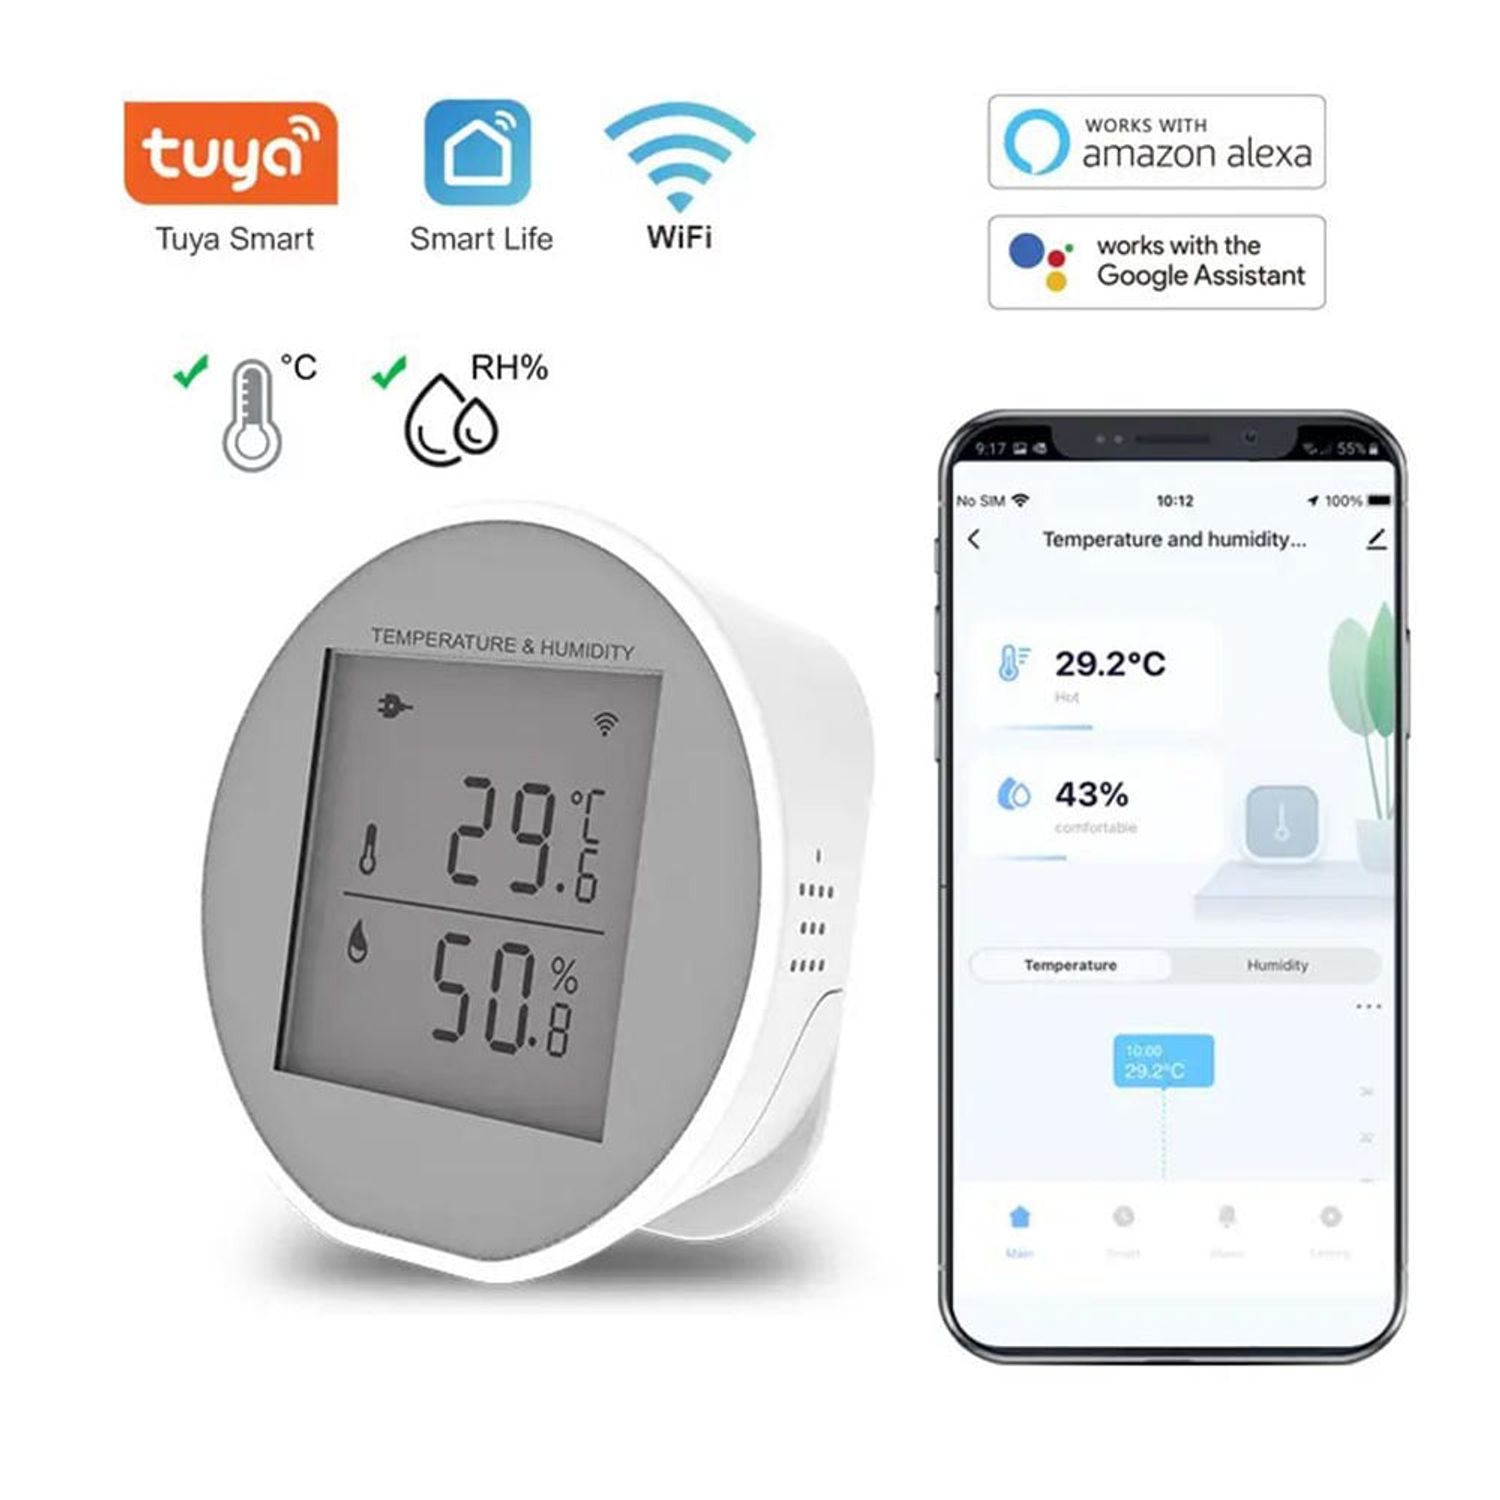 Guía del usuario del monitor inteligente de temperatura y humedad